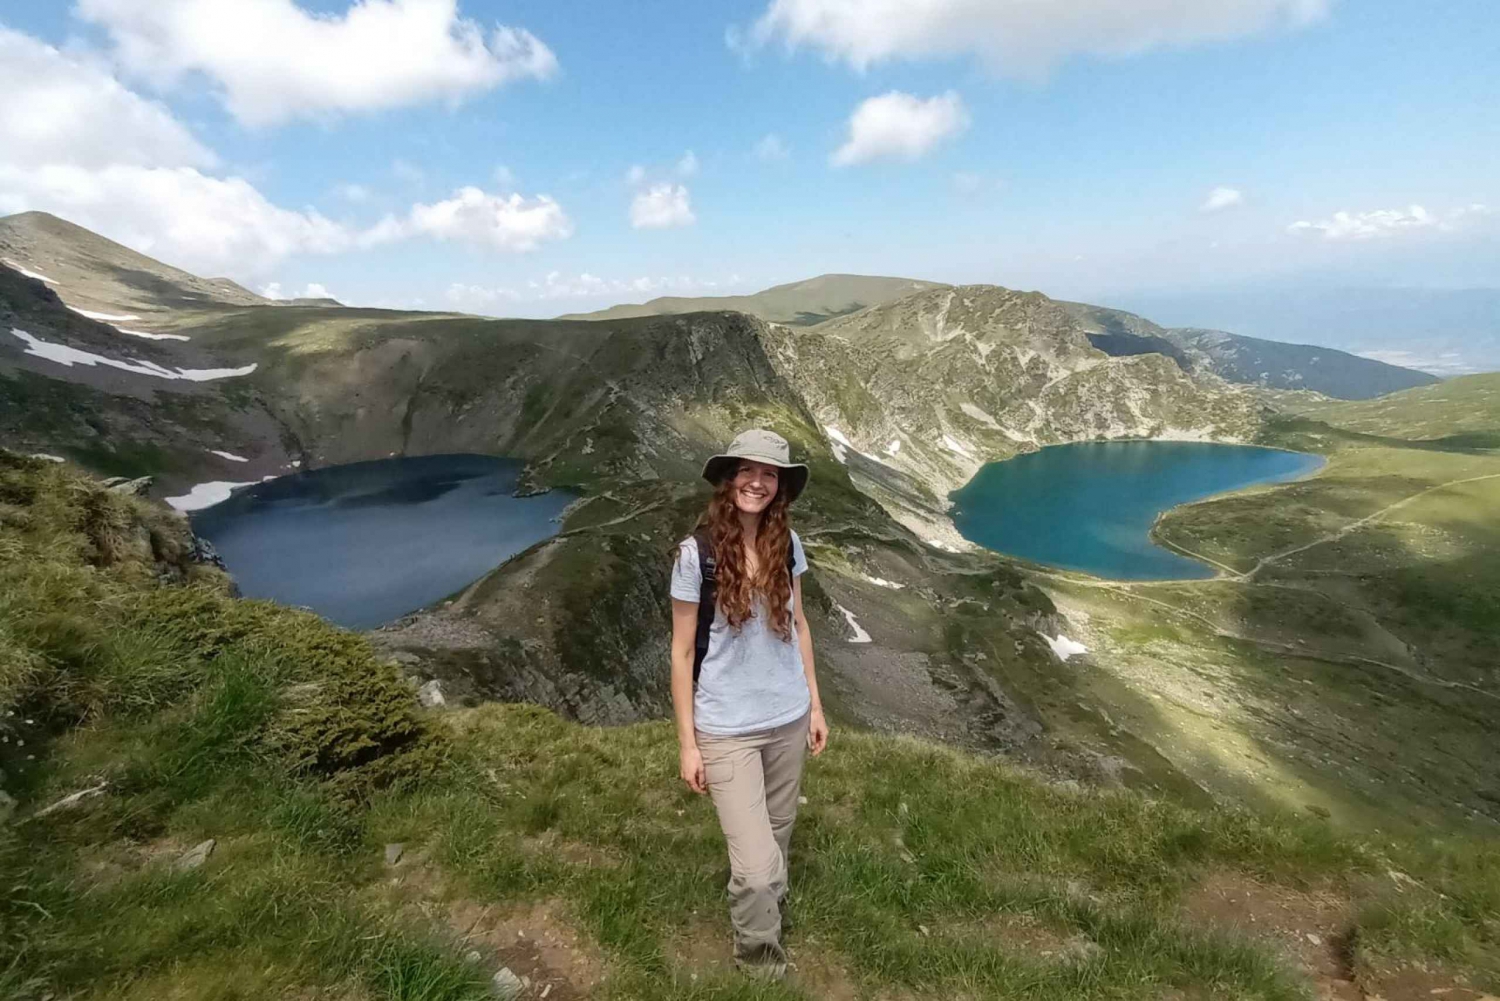 Sofia: Rila-järvet ja Rilan luostari - itseopastettu päiväretki